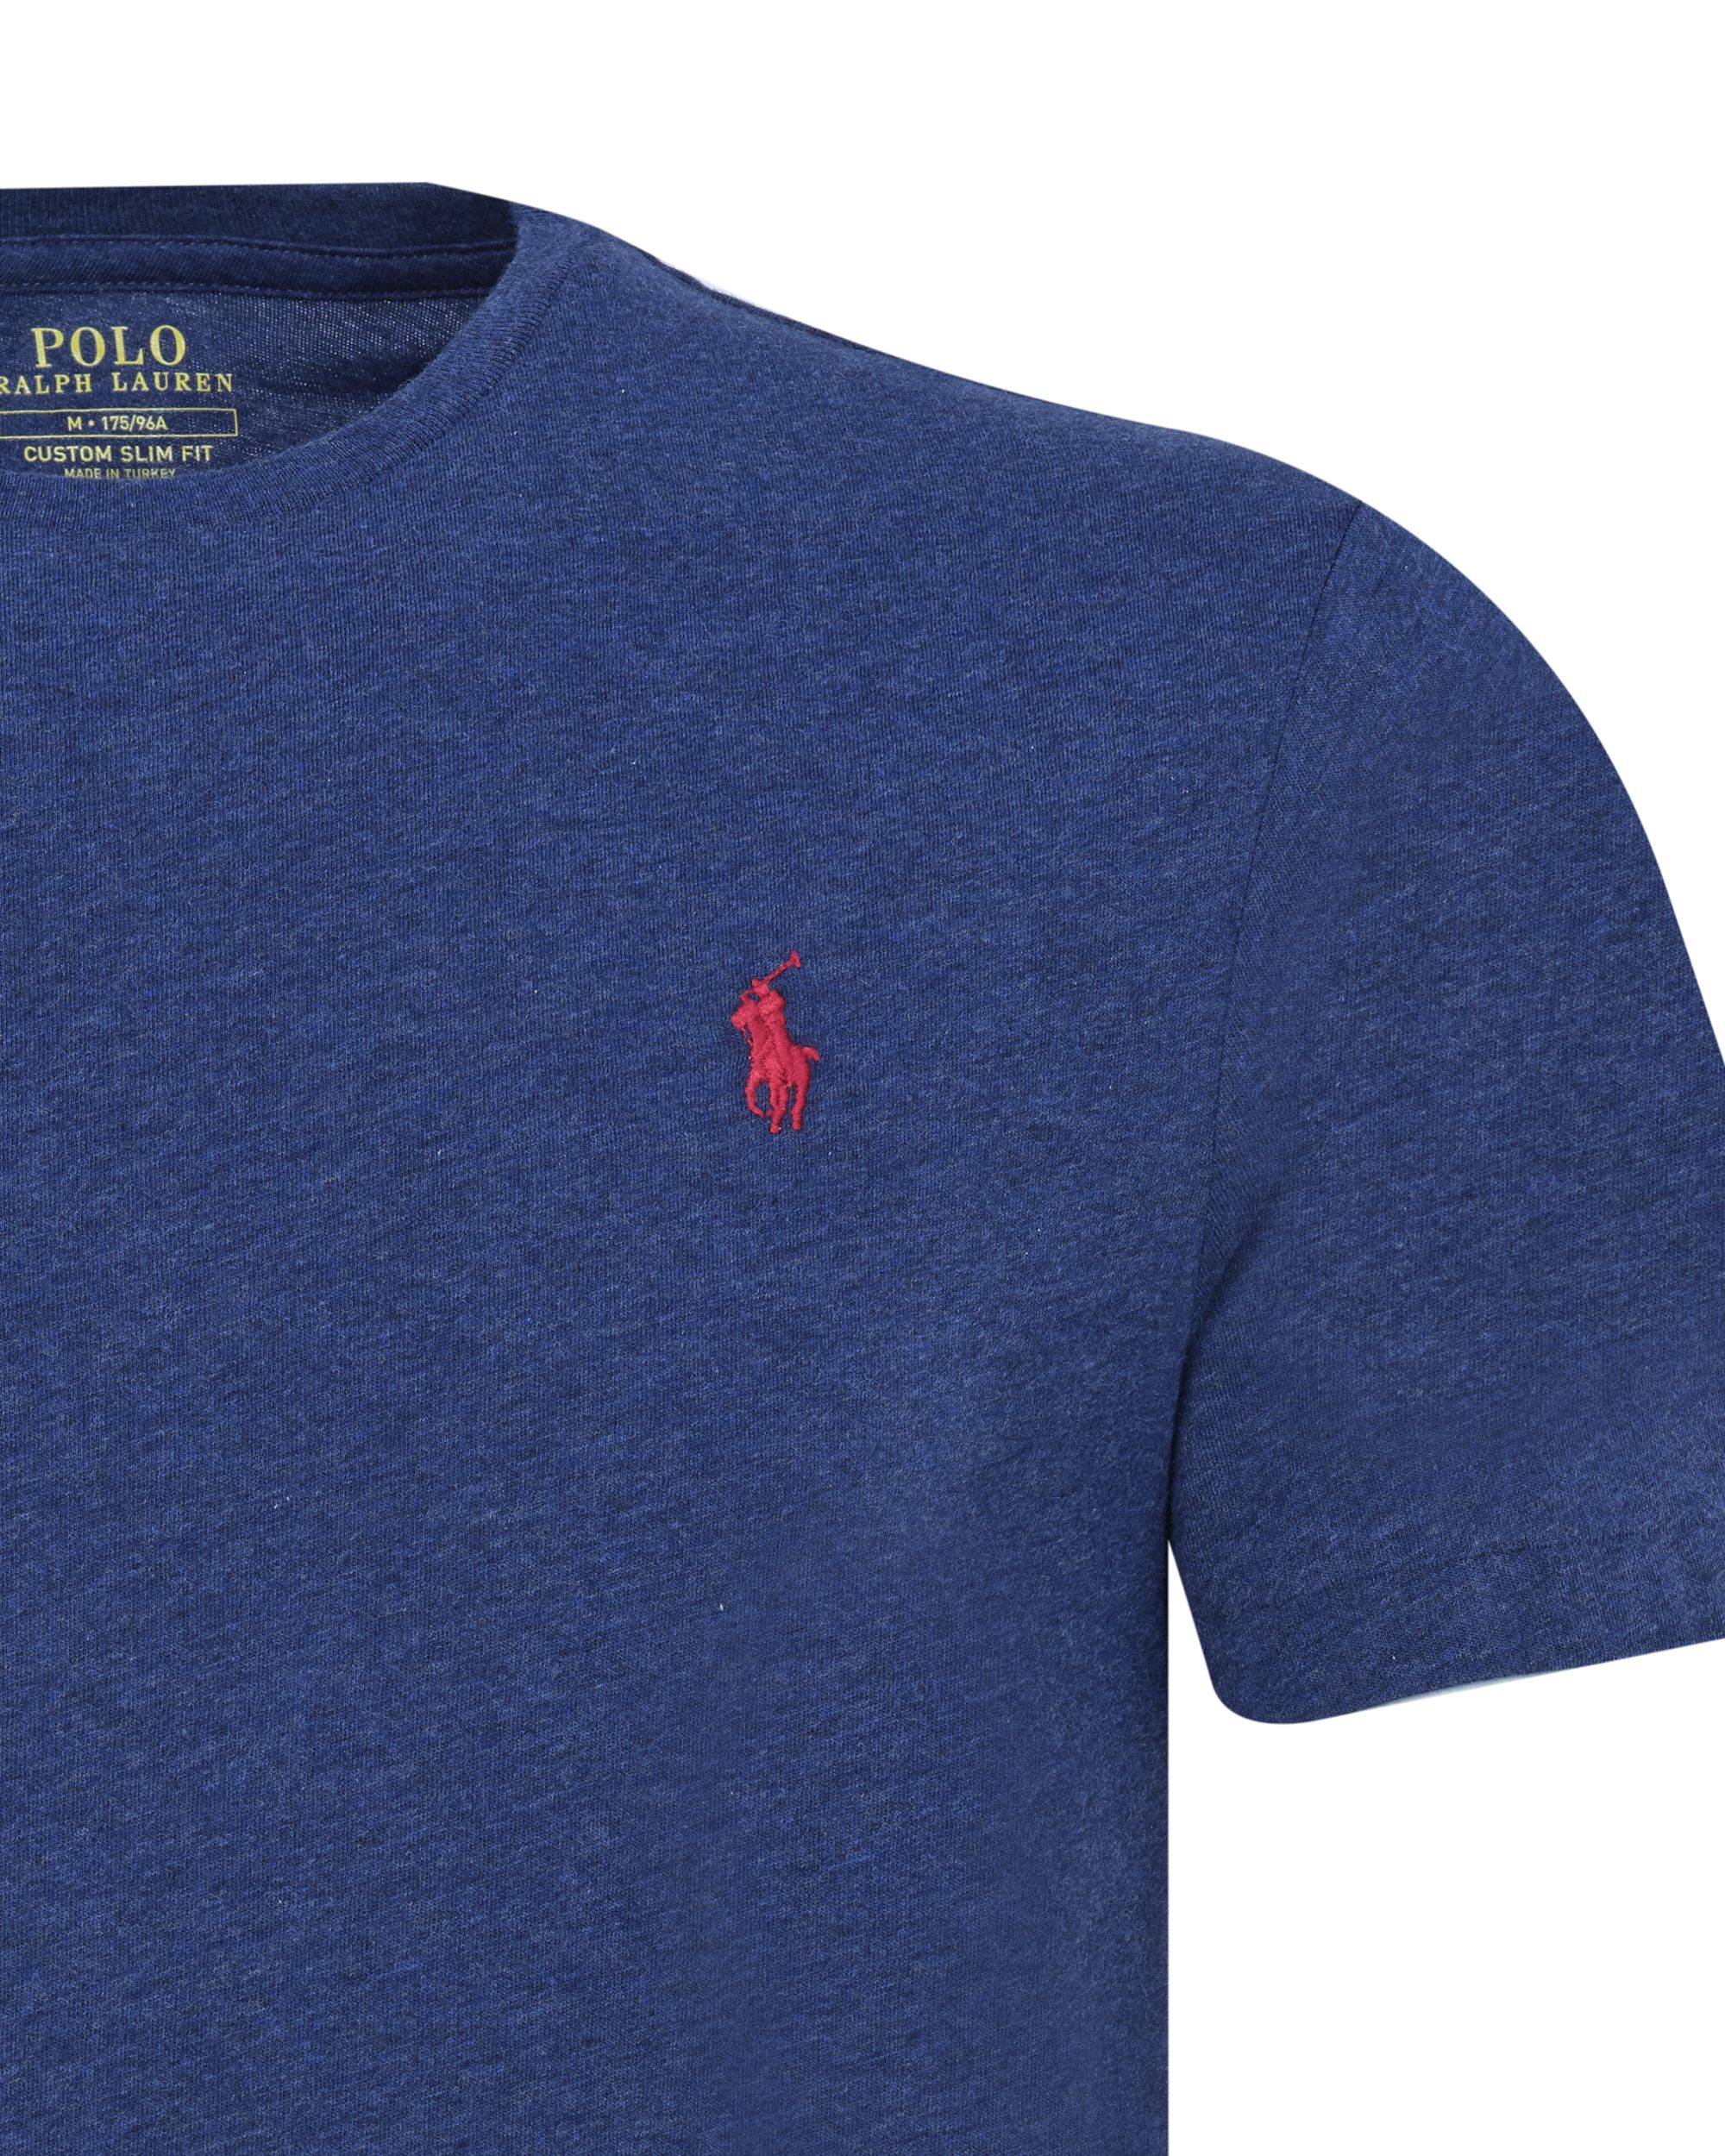 Polo Ralph Lauren T-shirt KM Donker blauw 080554-001-L